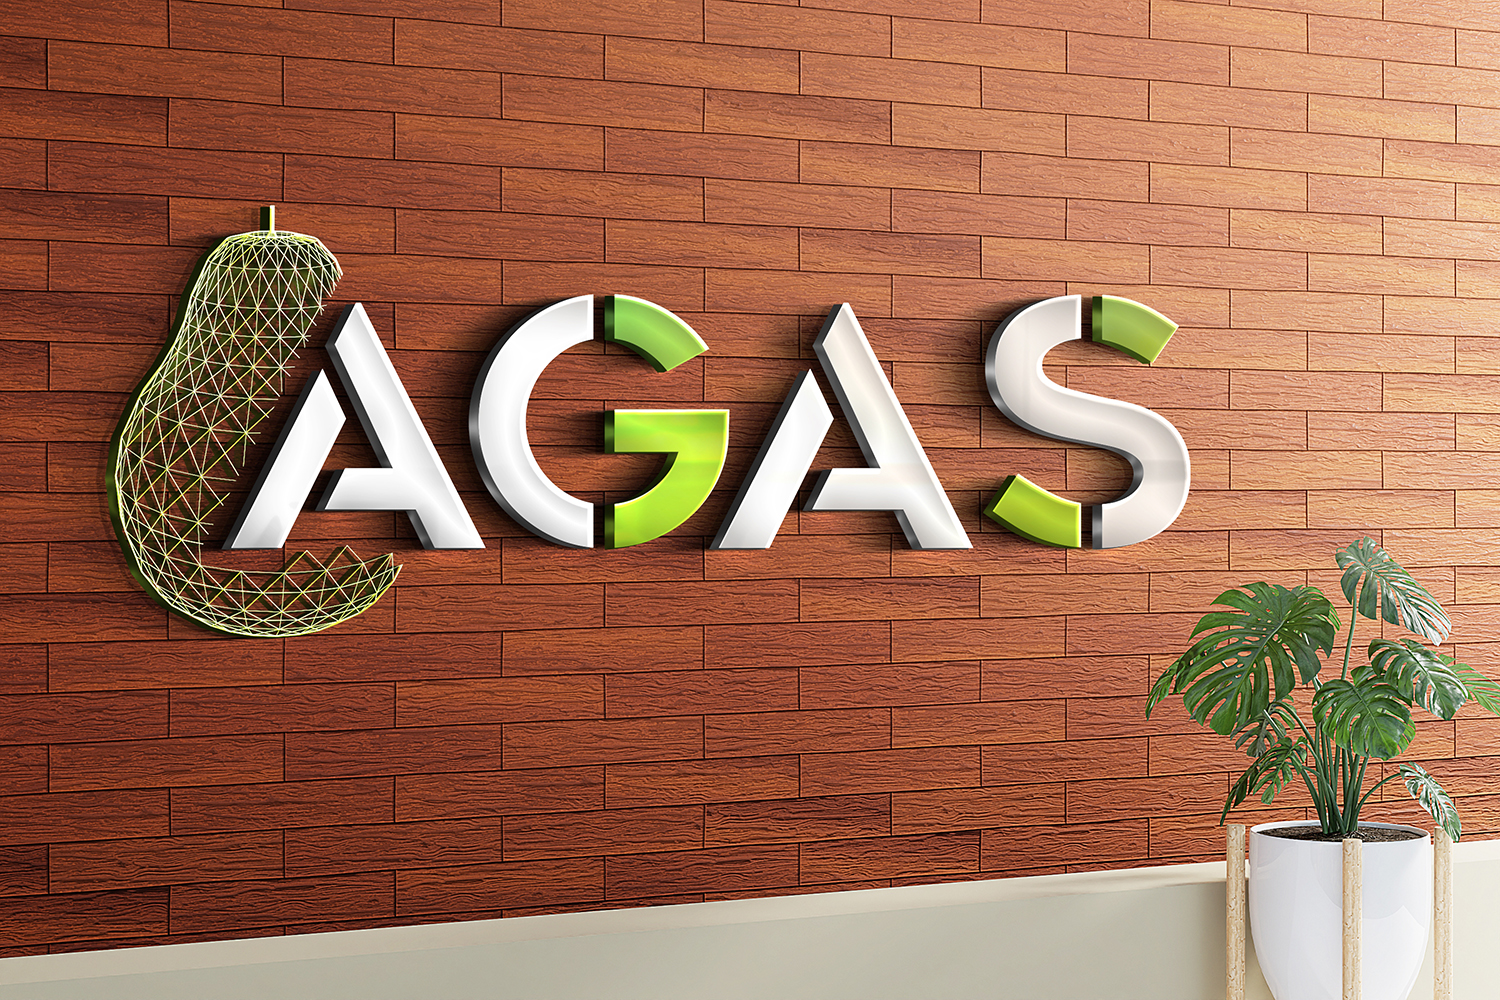 אודות AGAS מחשוב ותקשורת לעסקים